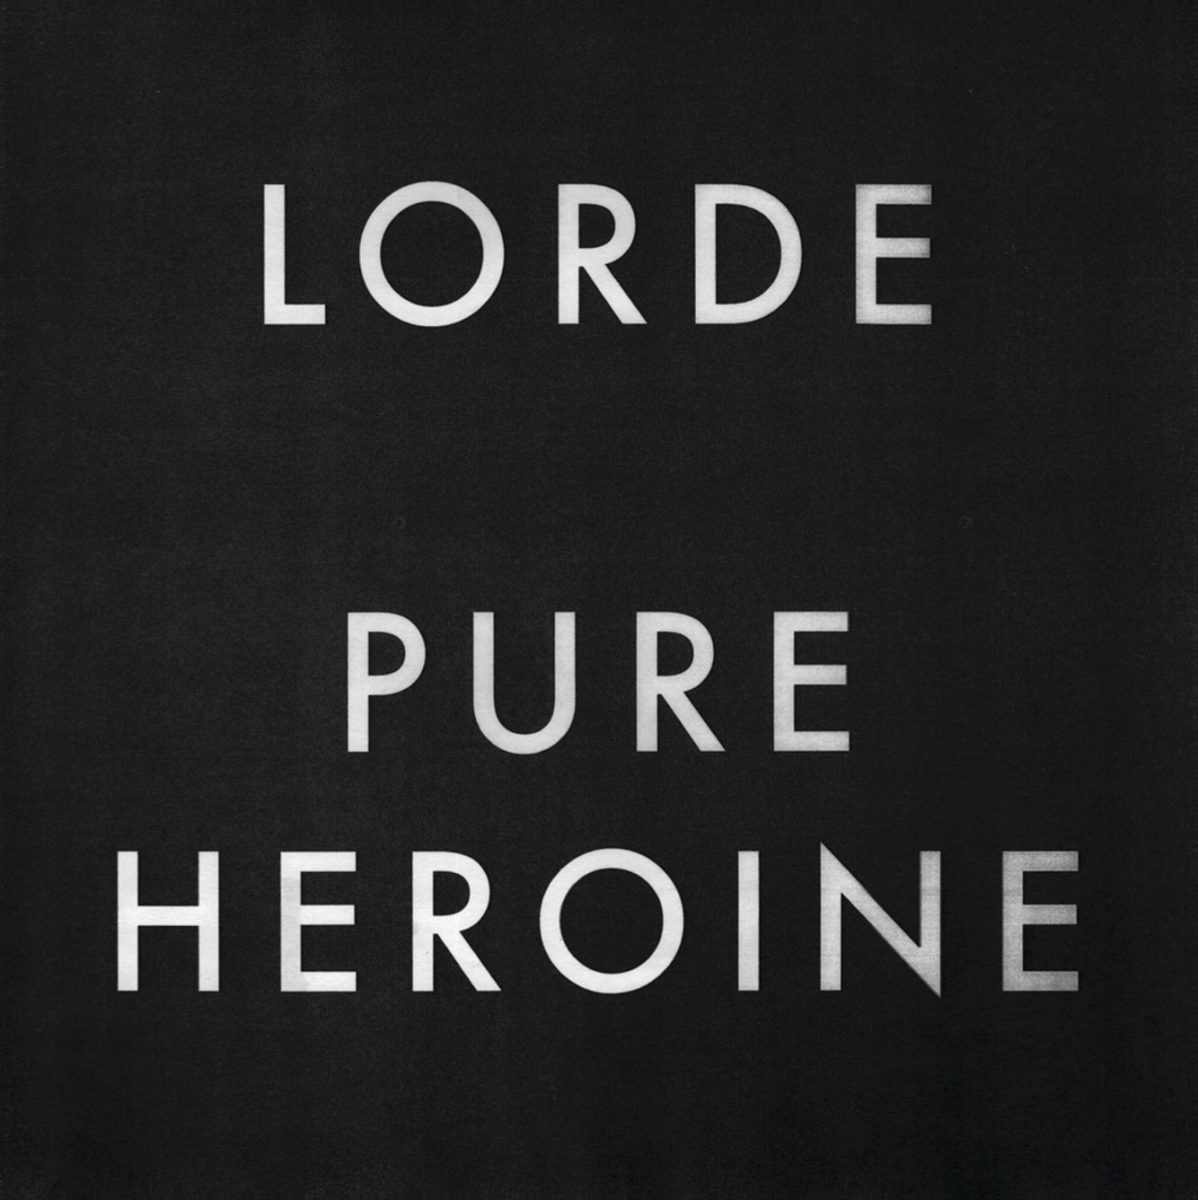 Cover art for Lorde’s album “Pure Heroine”, released on September 27, 2013. 